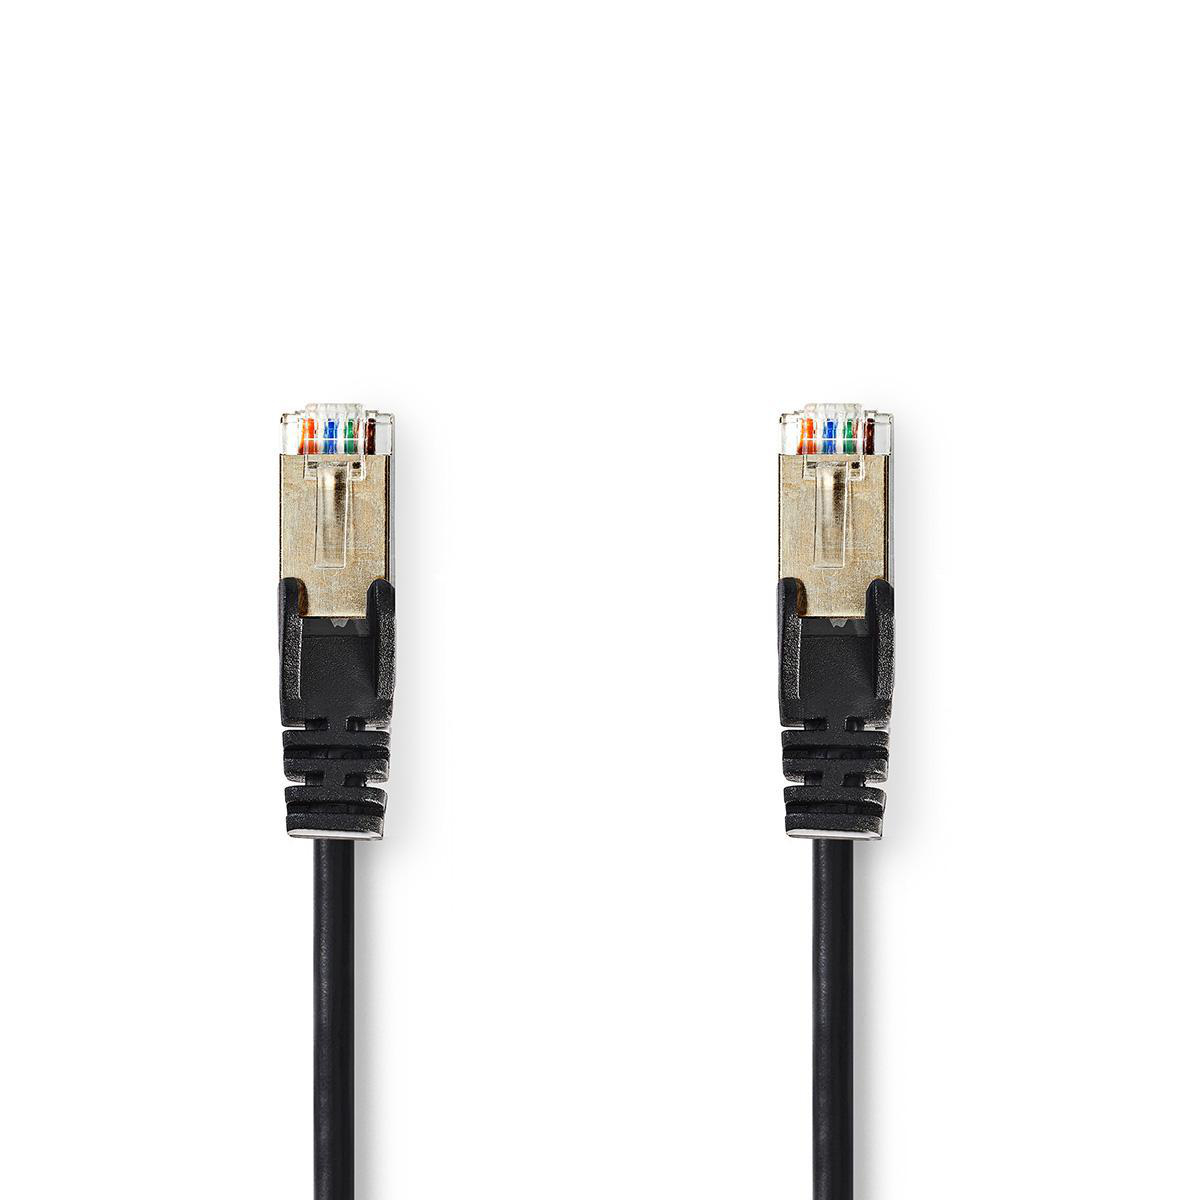 Nedis síťový kabel SF/UTP CAT5e, zástrčka RJ45 - zástrčka RJ45, 0.25 m, černá (CCGP85121BK025)